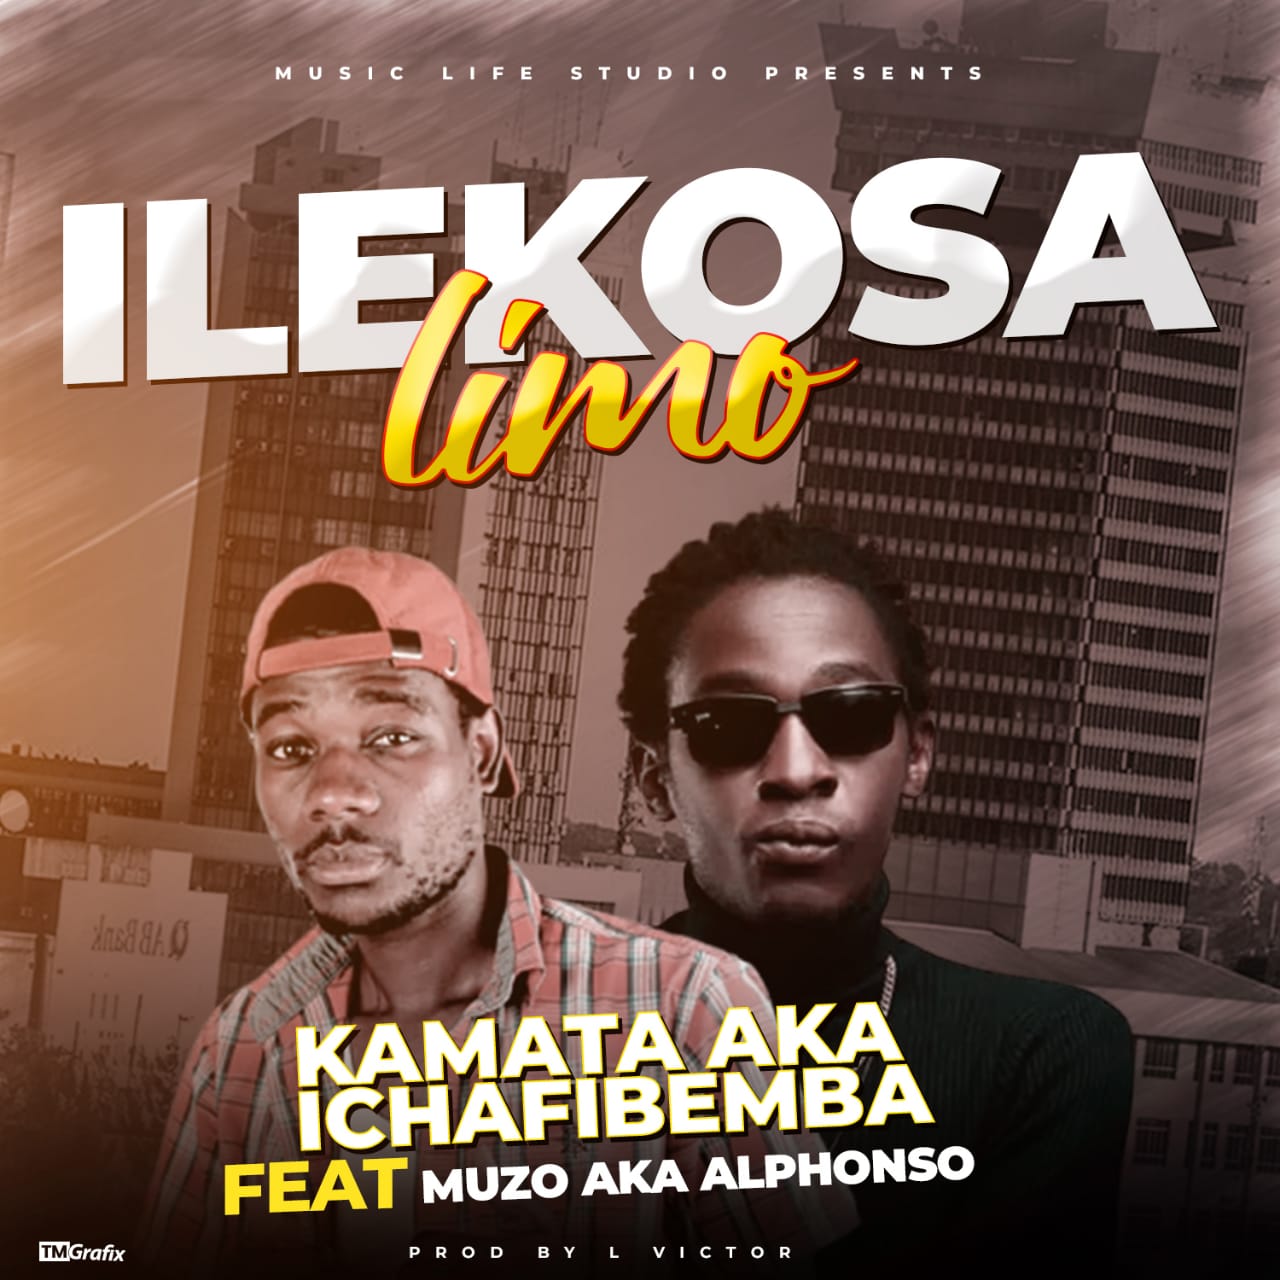 Kamata AKA Ichafibemba ft. Muzo AKA Alphonso - Ilakosa Limo